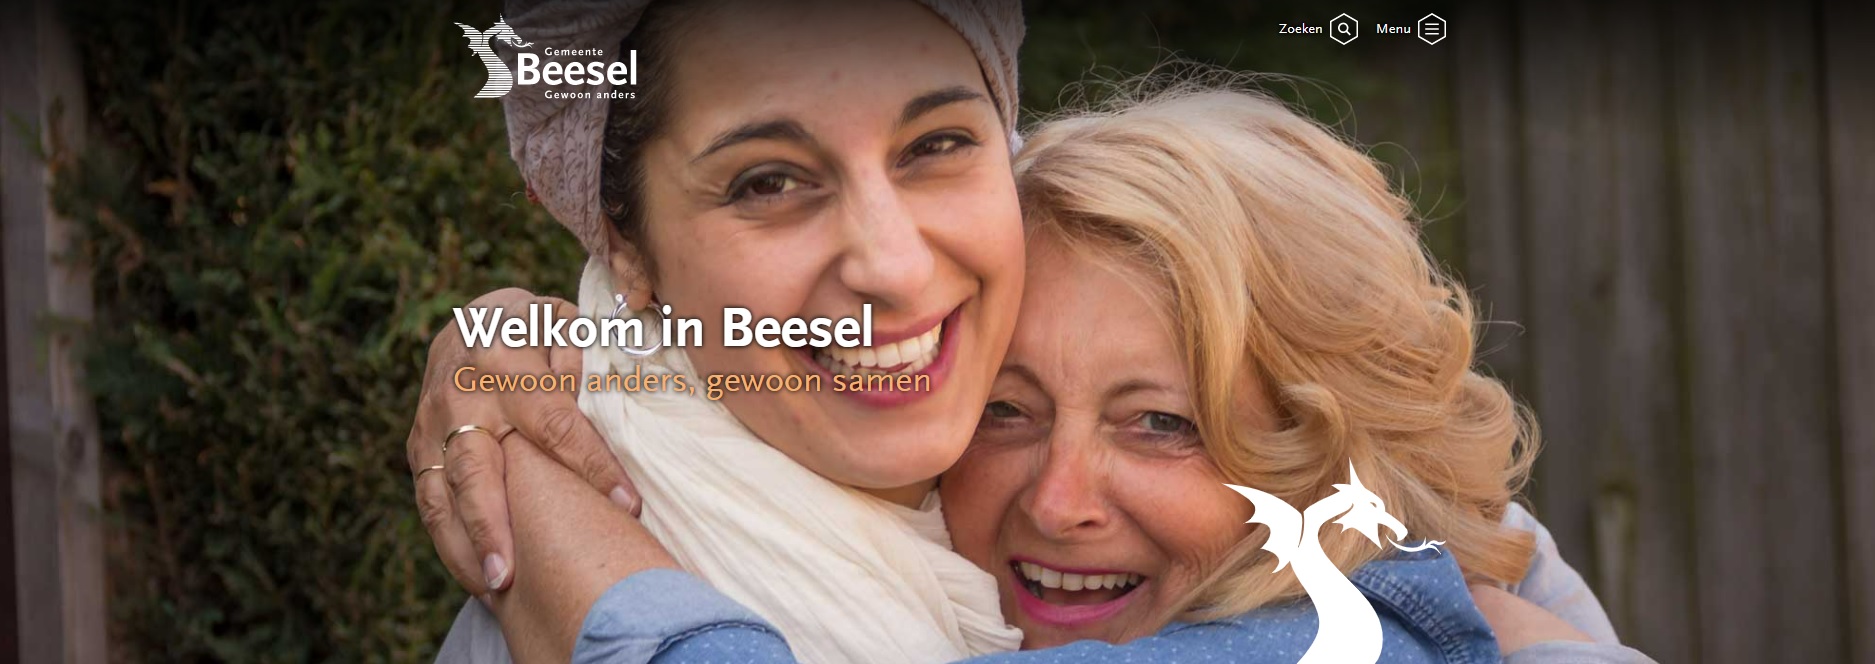 Homepage website Gemeente Beesel